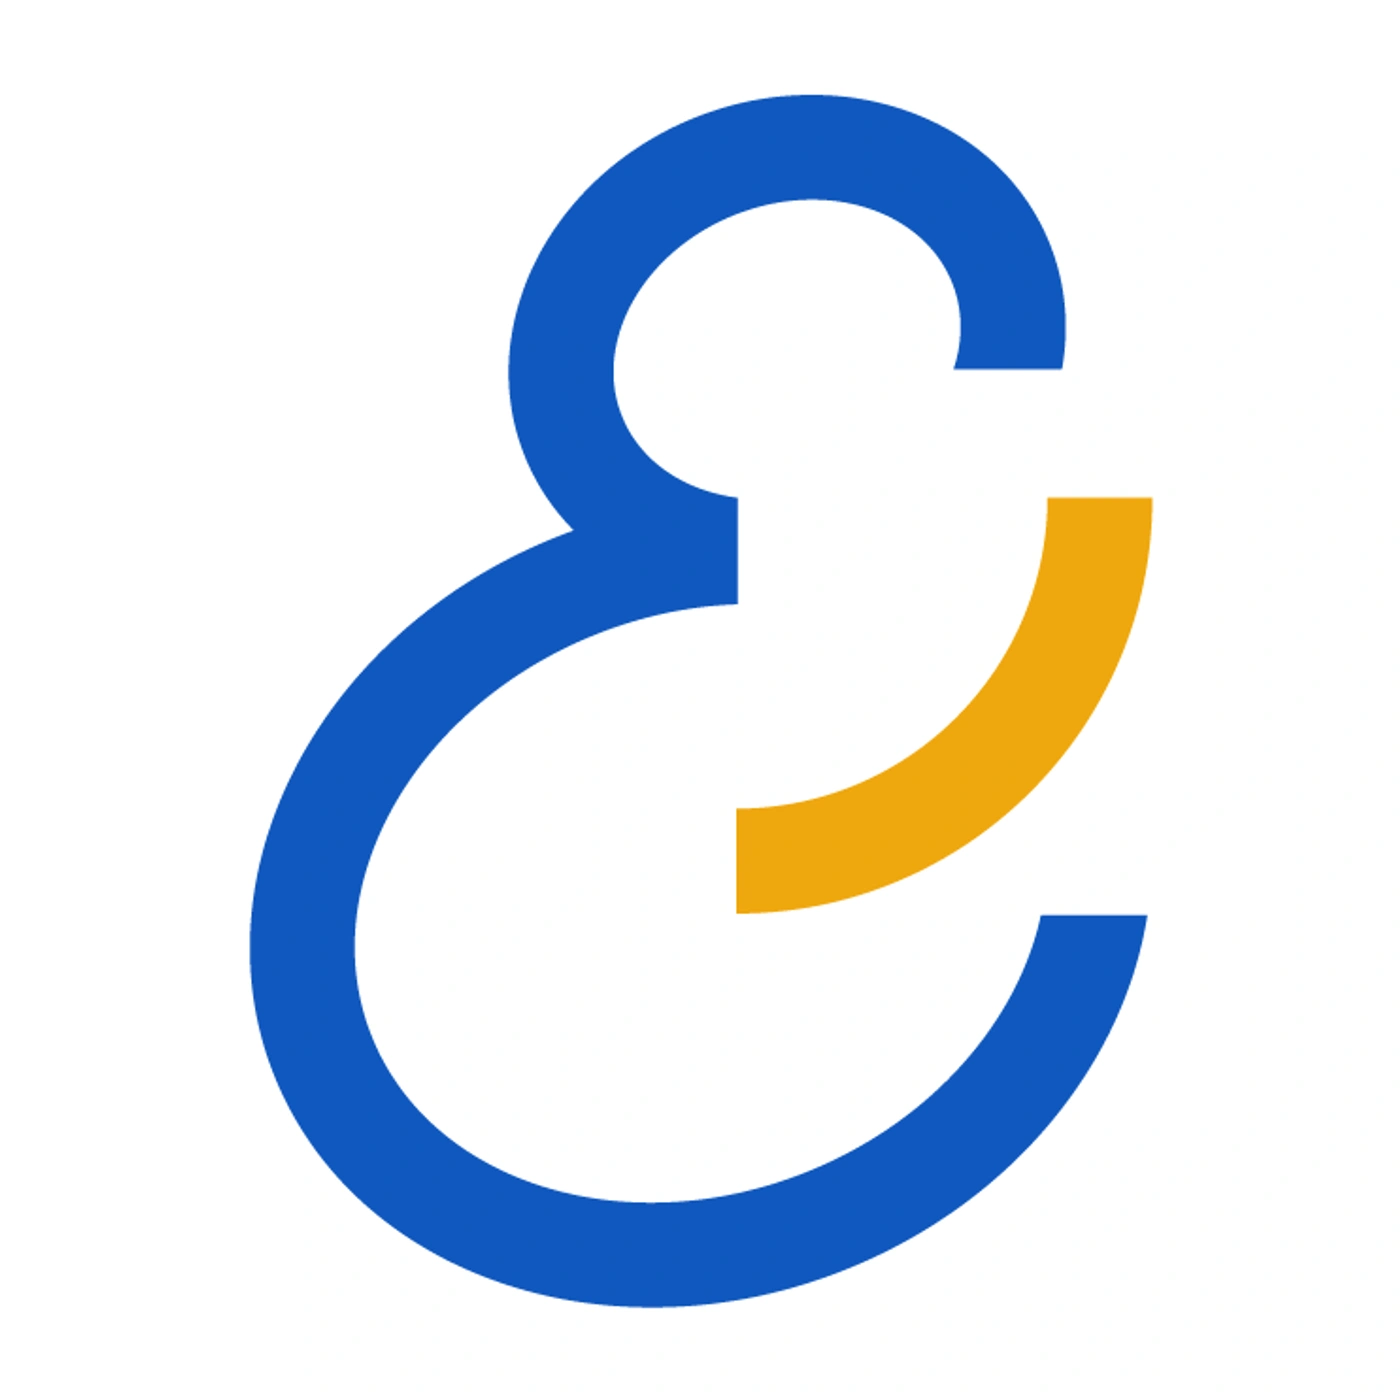 Logo de l'entreprise Partenamut pour l'offre d'emploi HR business partner